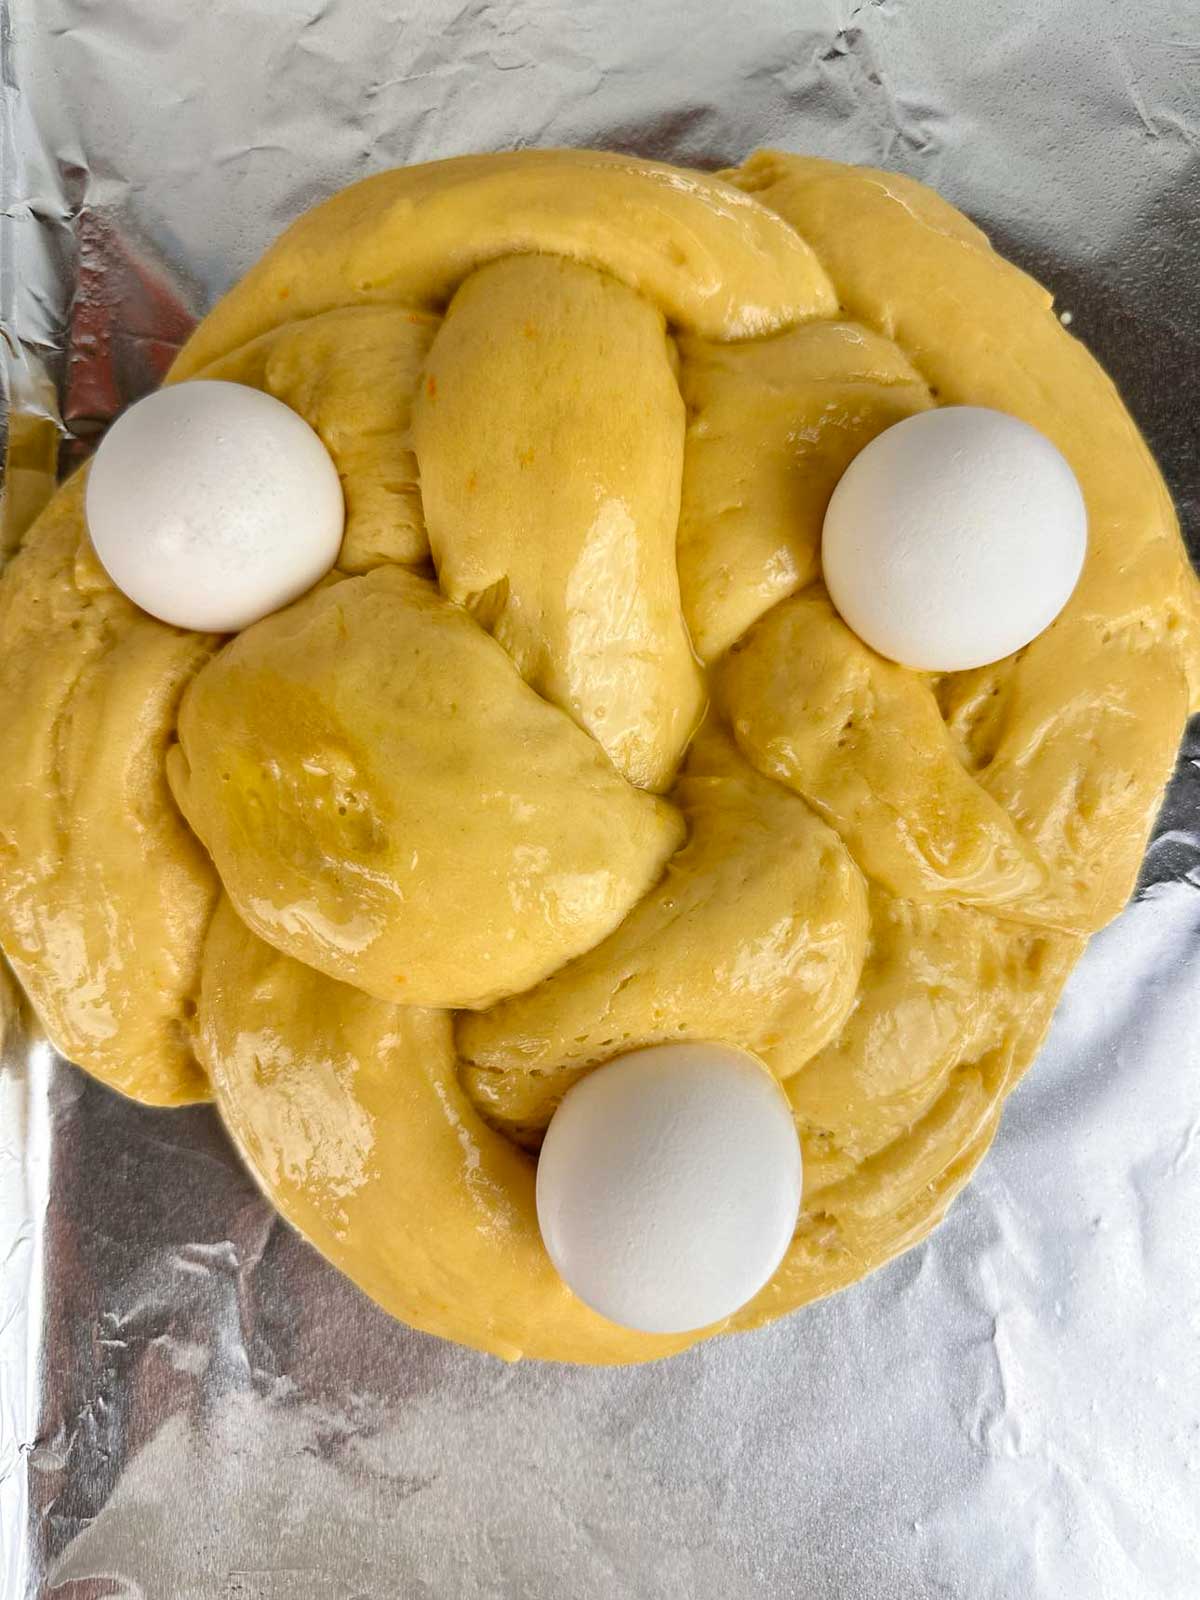 Press the eggs into the Italian Easter bread.